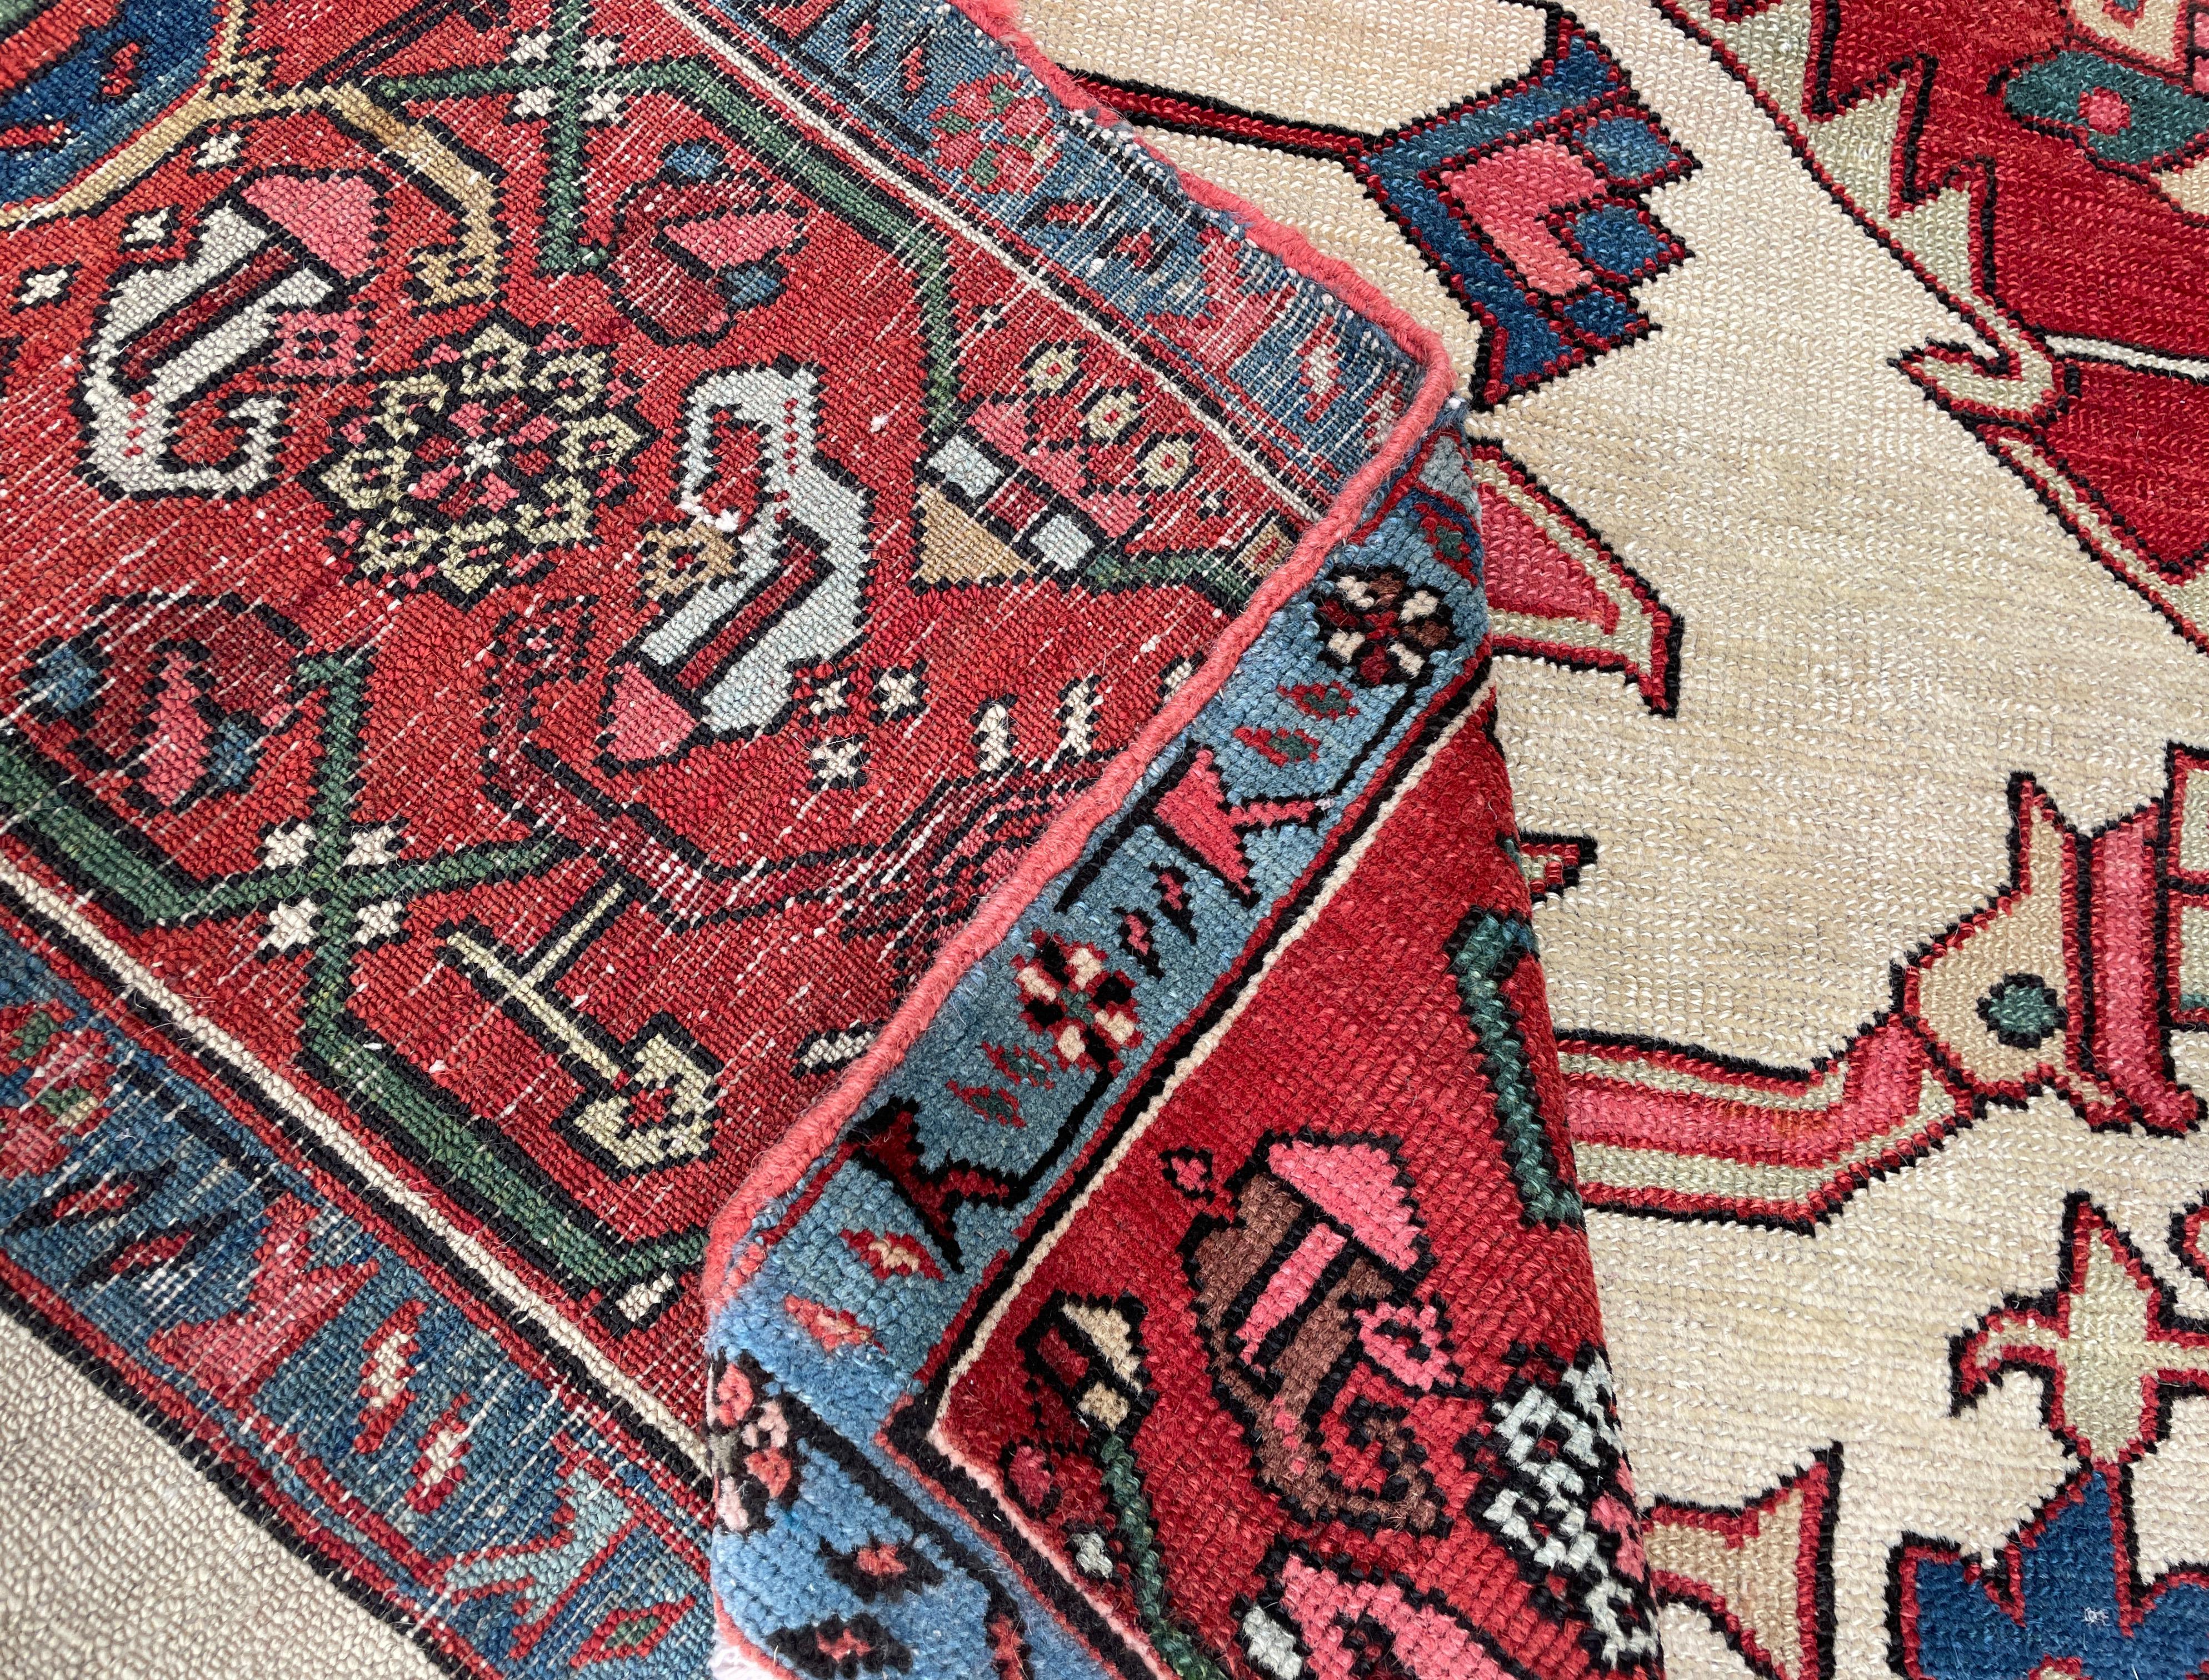 19th Century Antique Persian Serapi Carpet For Sale